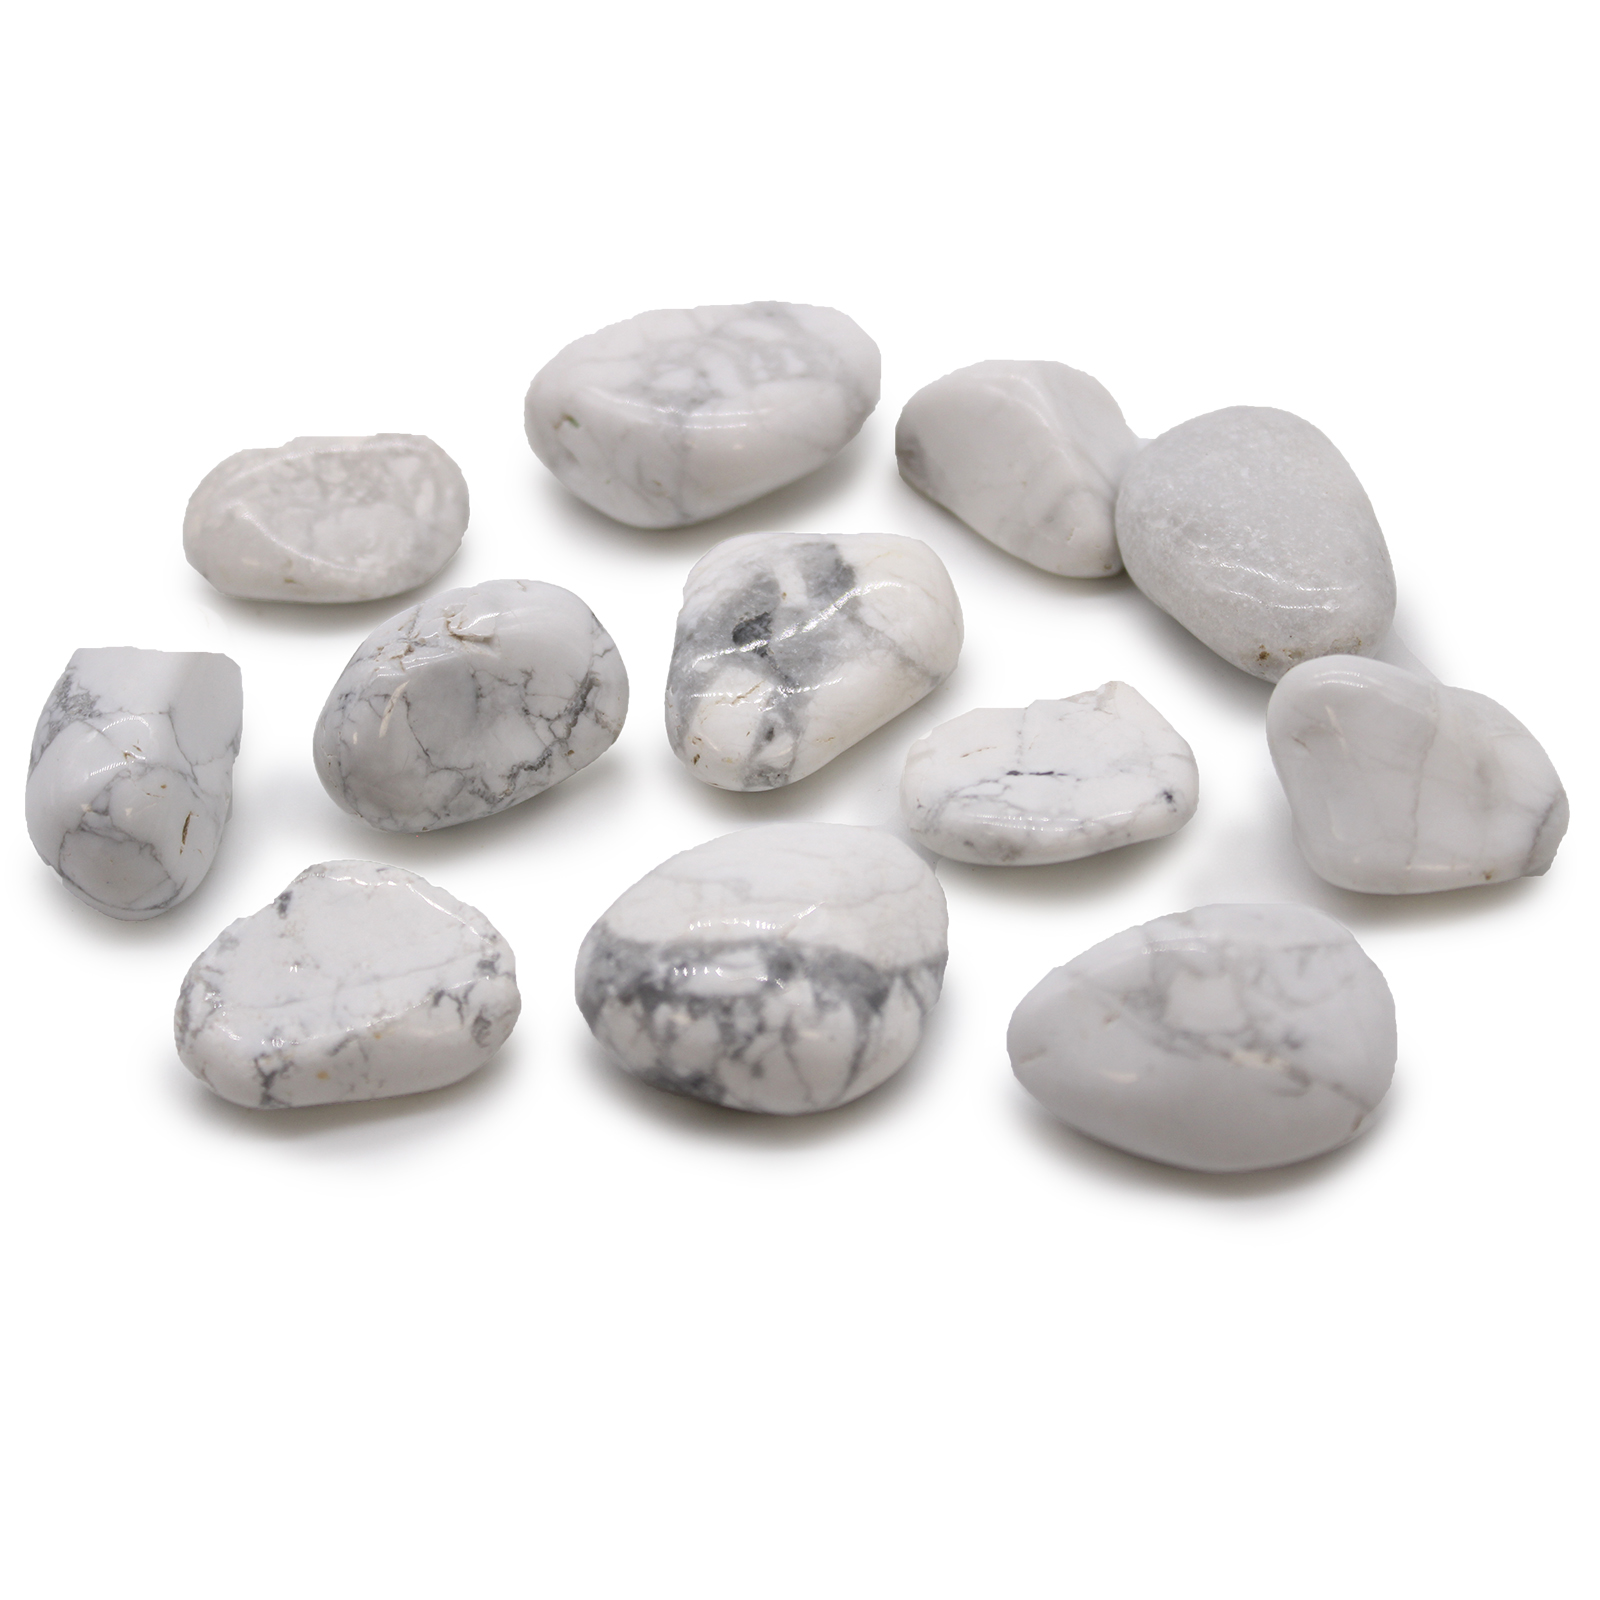 12 x Medium African Tumble Stones - White Howlite - Magnesite